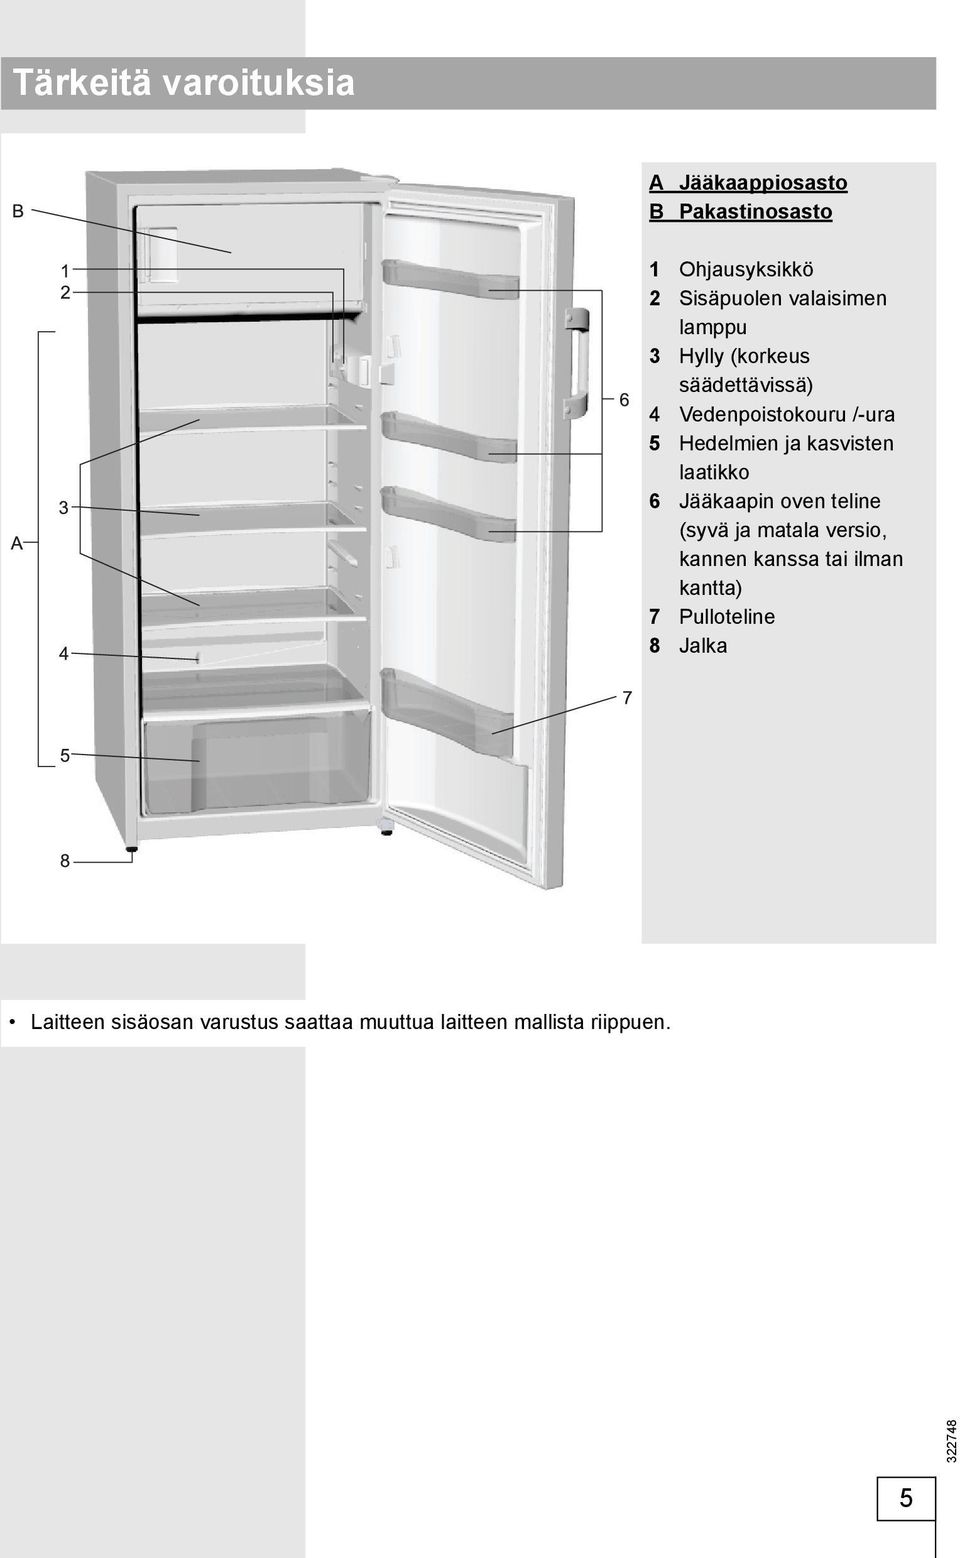 kasvisten laatikko 6 Jääkaapin oven teline (syvä ja matala versio, kannen kanssa tai ilman